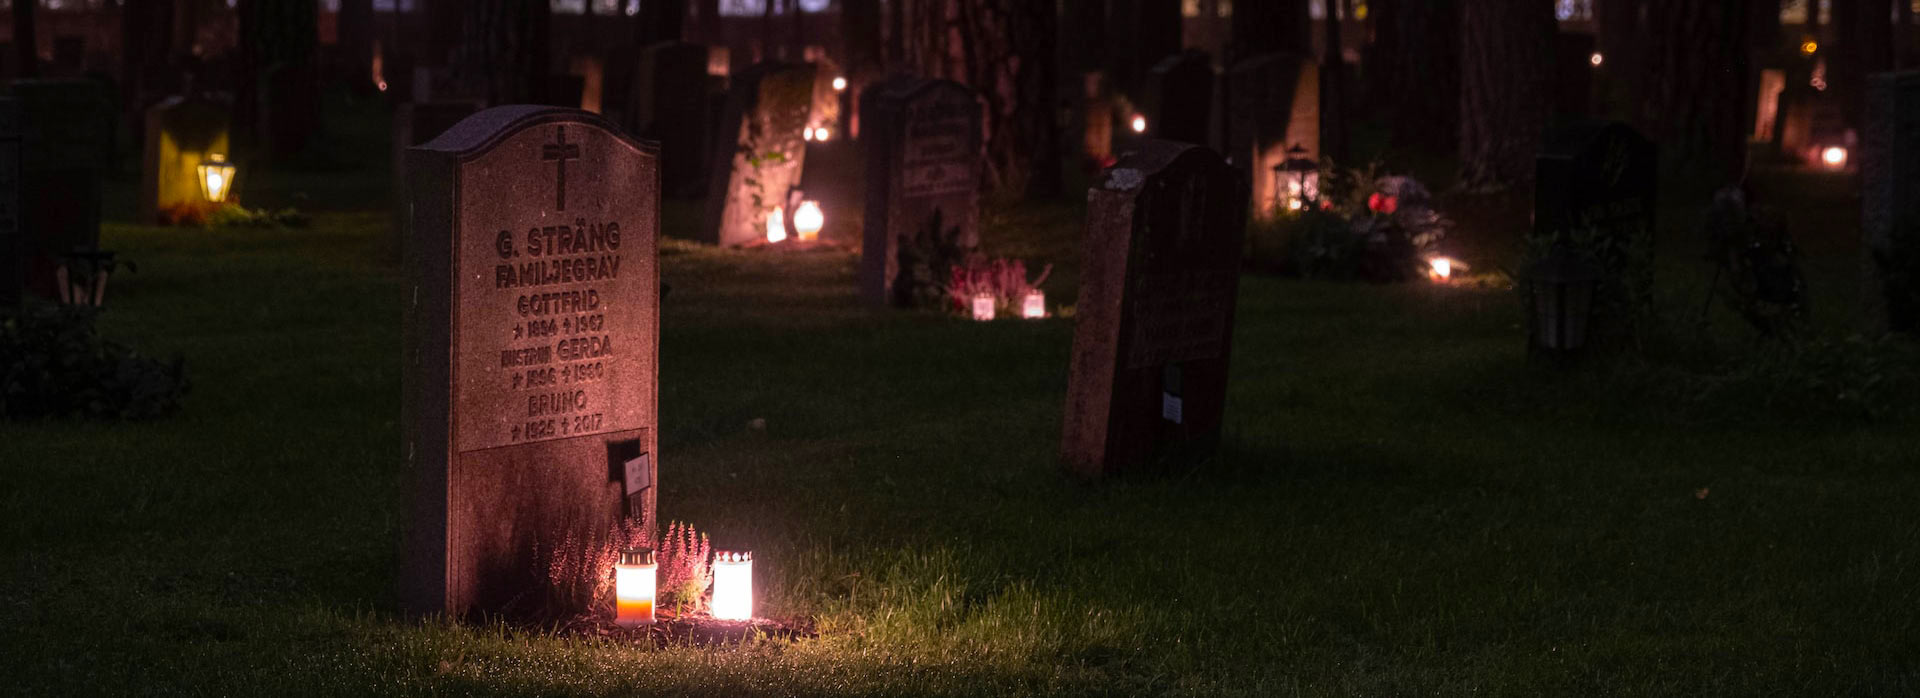 Een kerkhof bij nacht verlicht met kaarsen